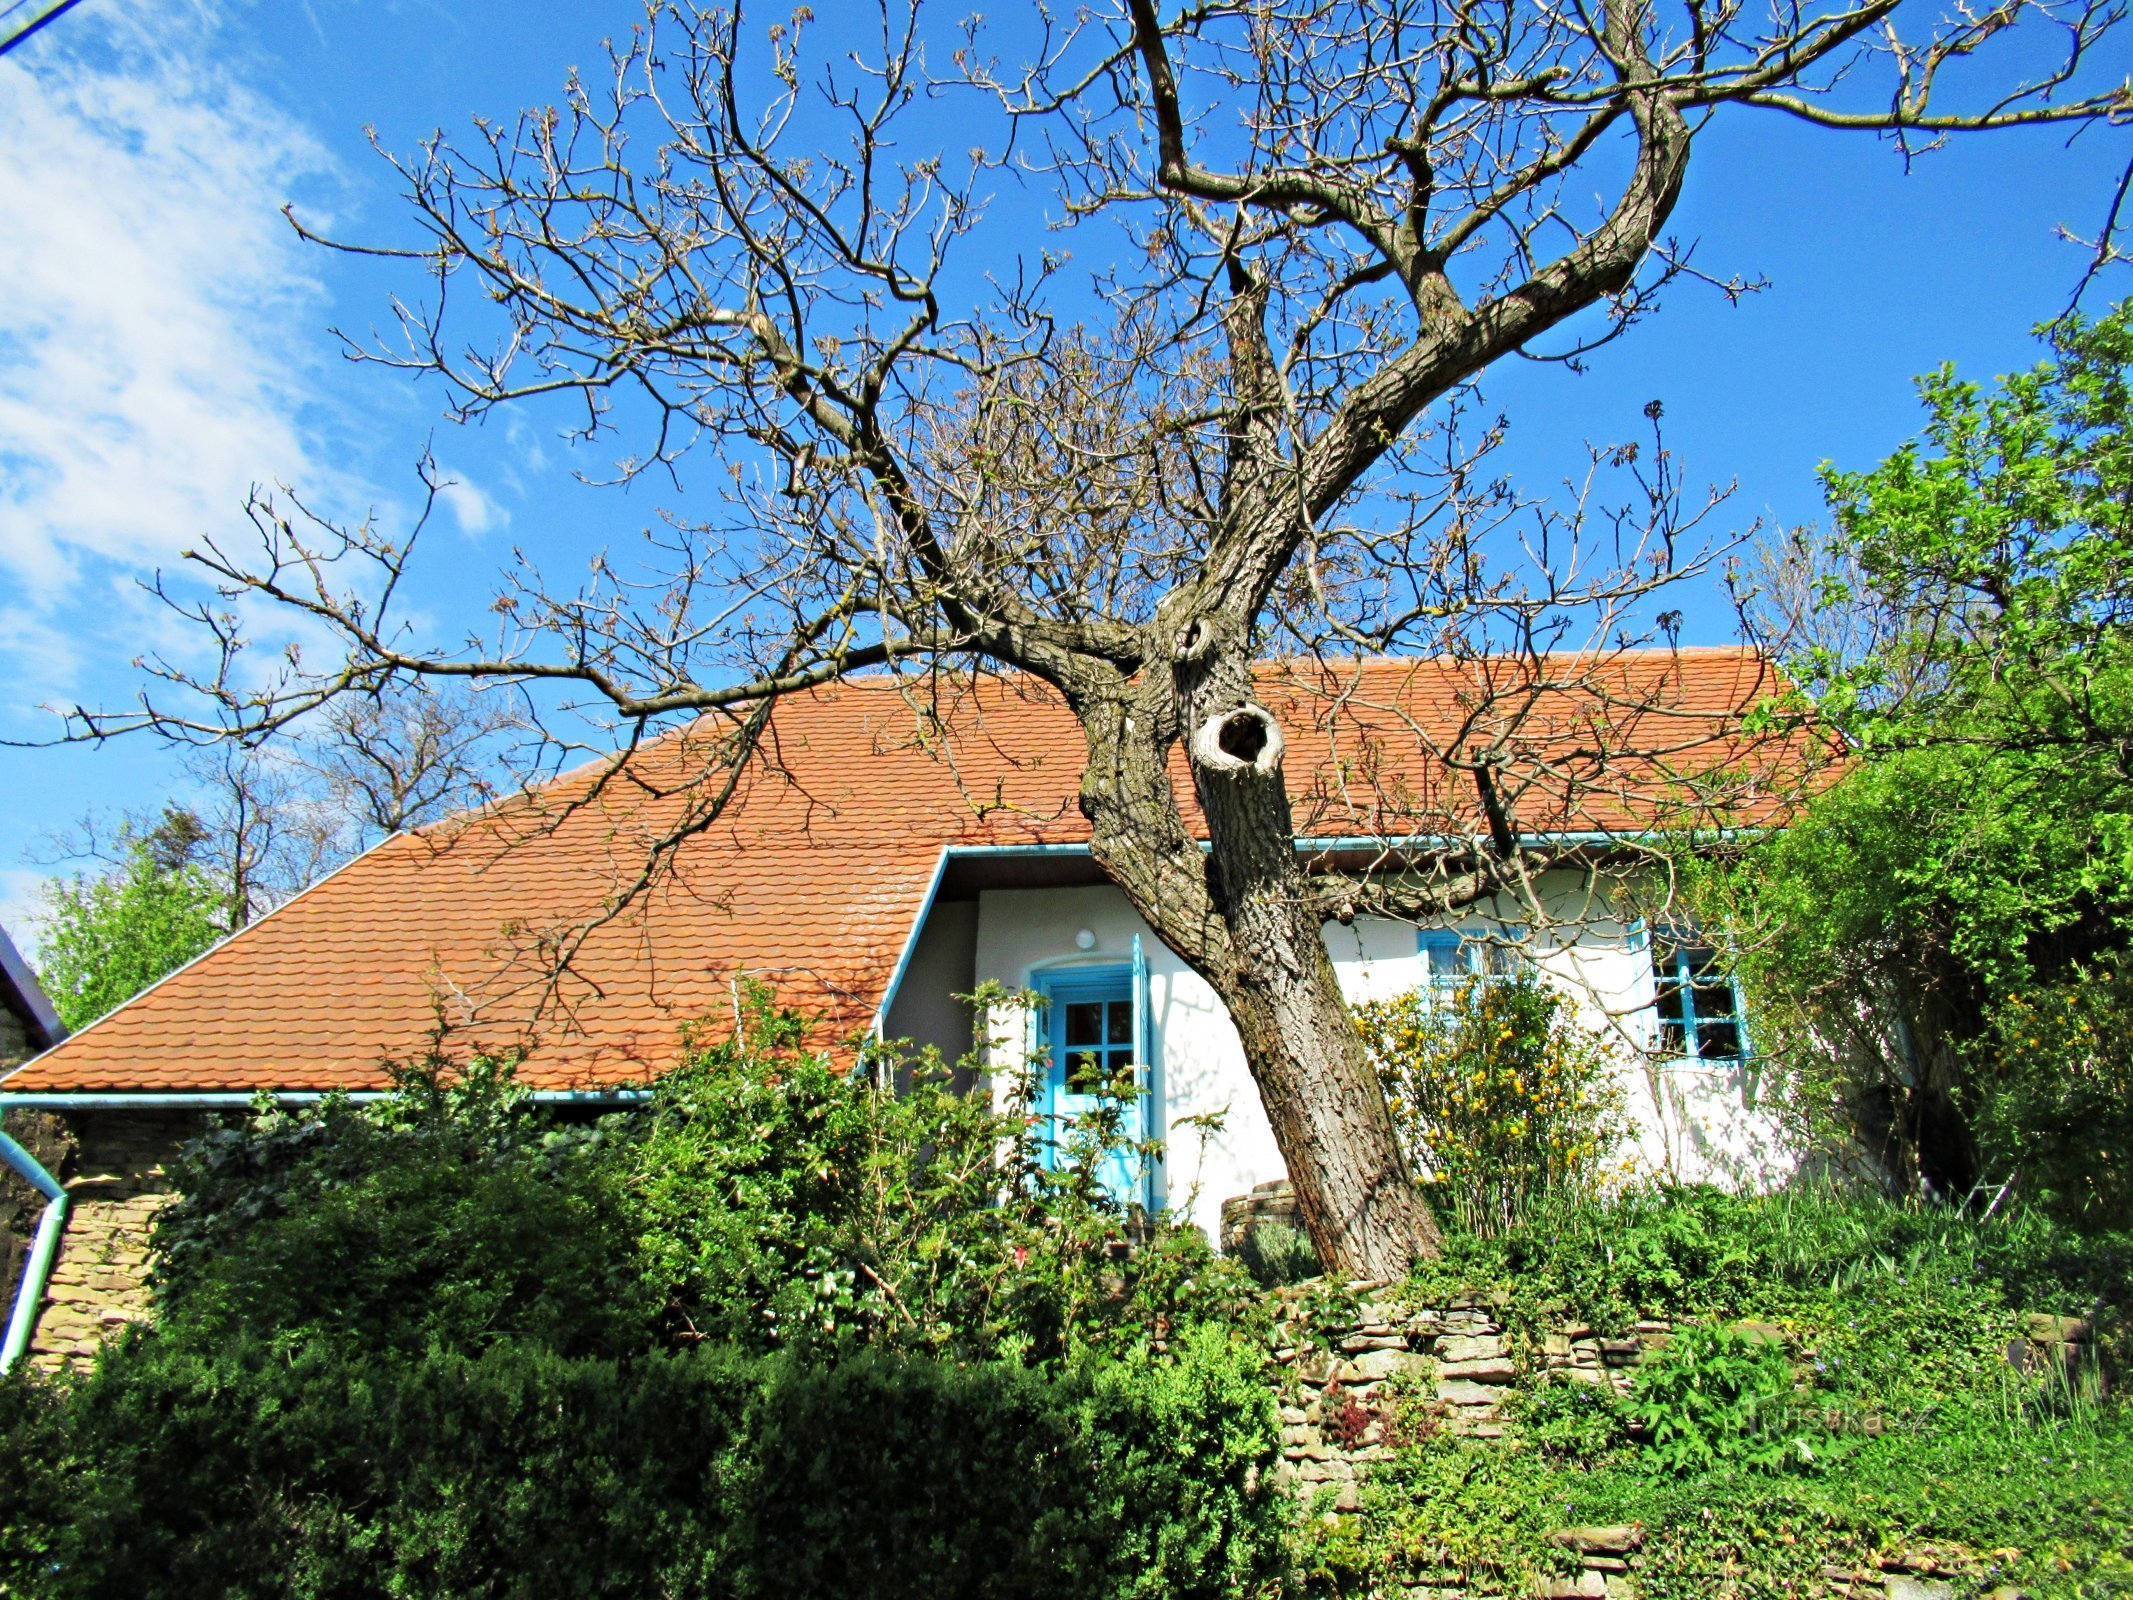 Javorník falu, festői házak a környéken - Kopanky Javorník faluban Szlováckóban